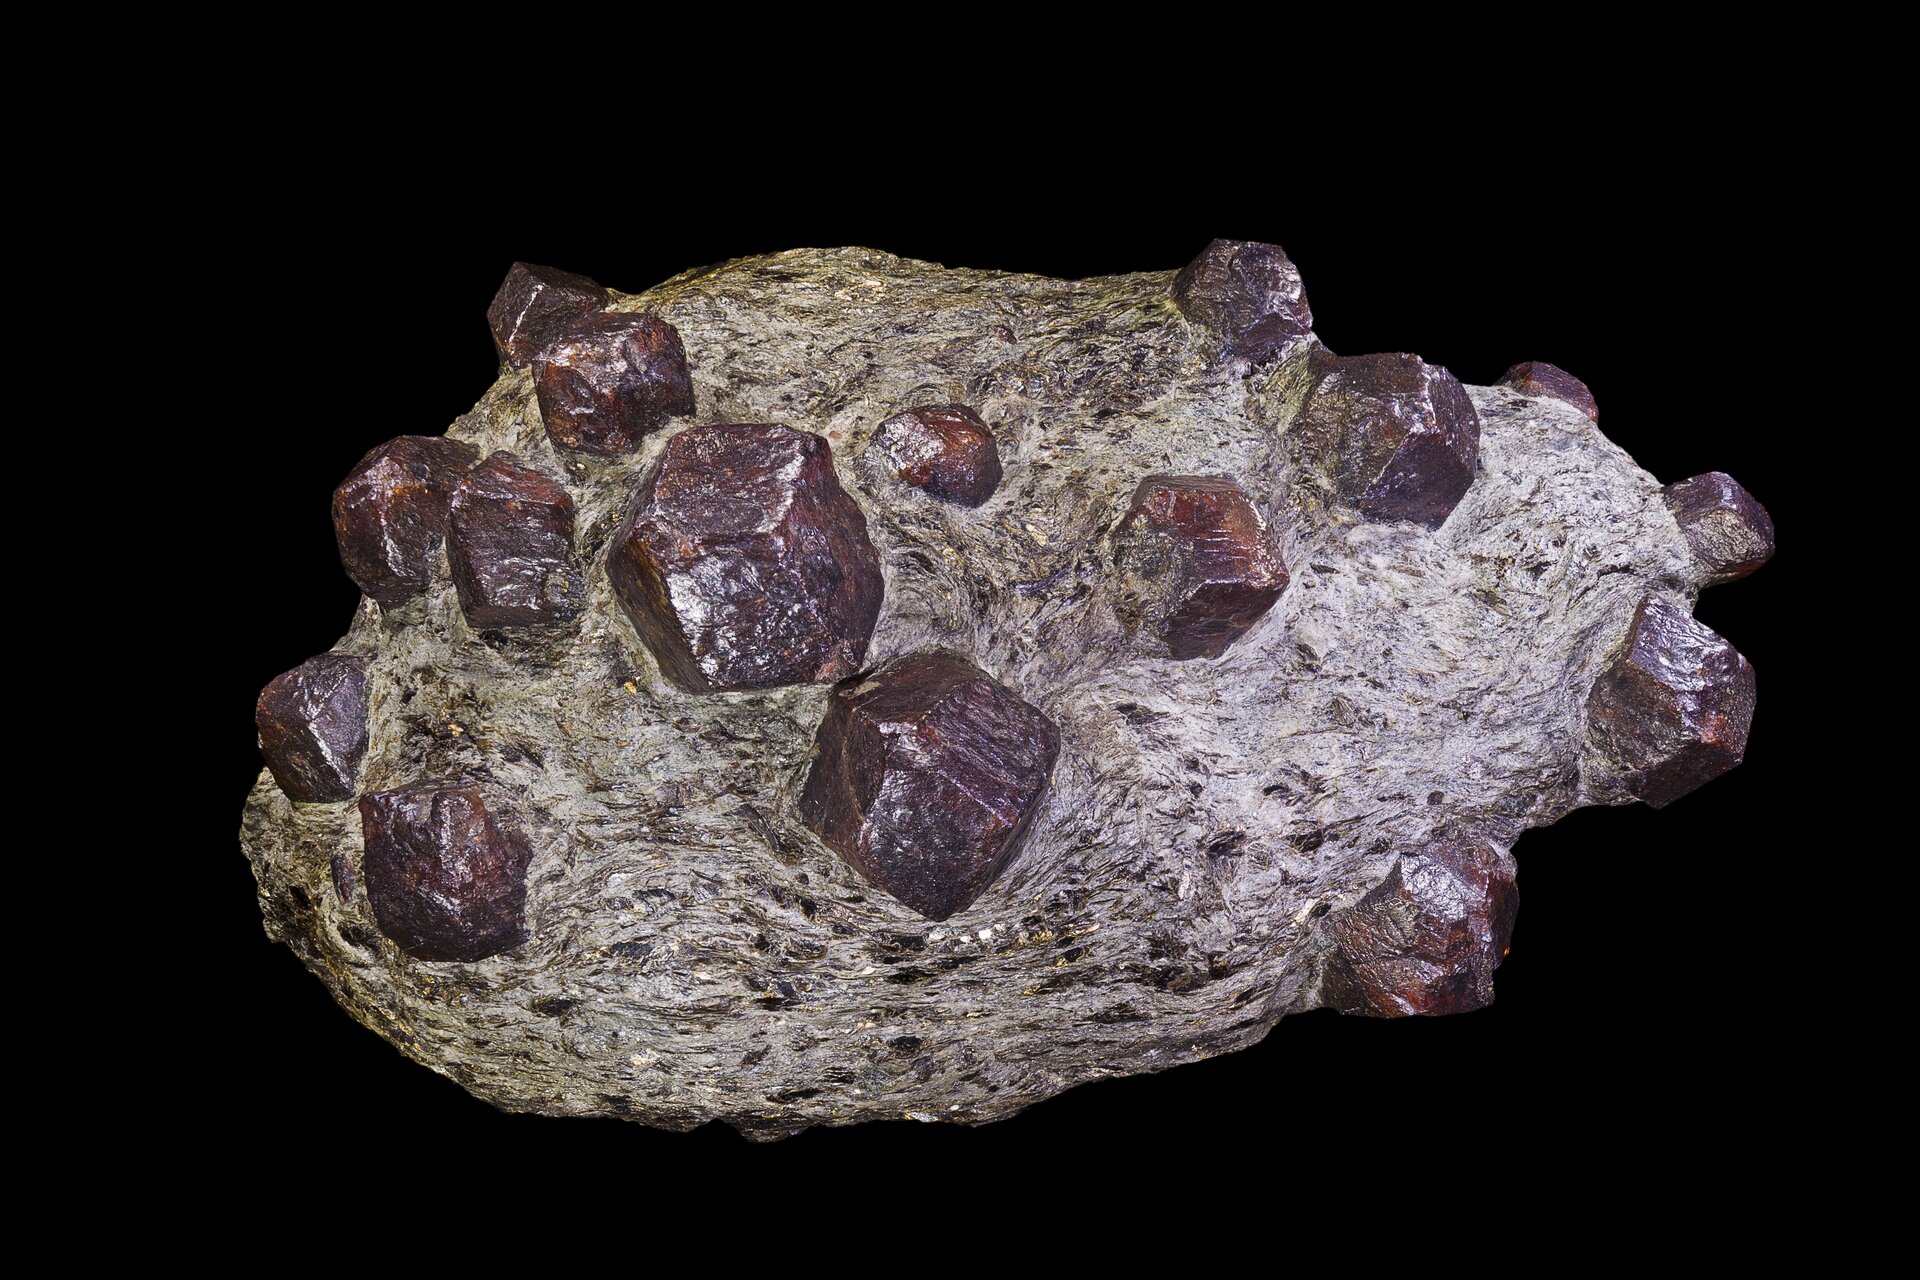 Zdjęcie ukazuje kamień, w którym znajdują się fioletowe niewielkie wielościany o fioletowej barwie.  